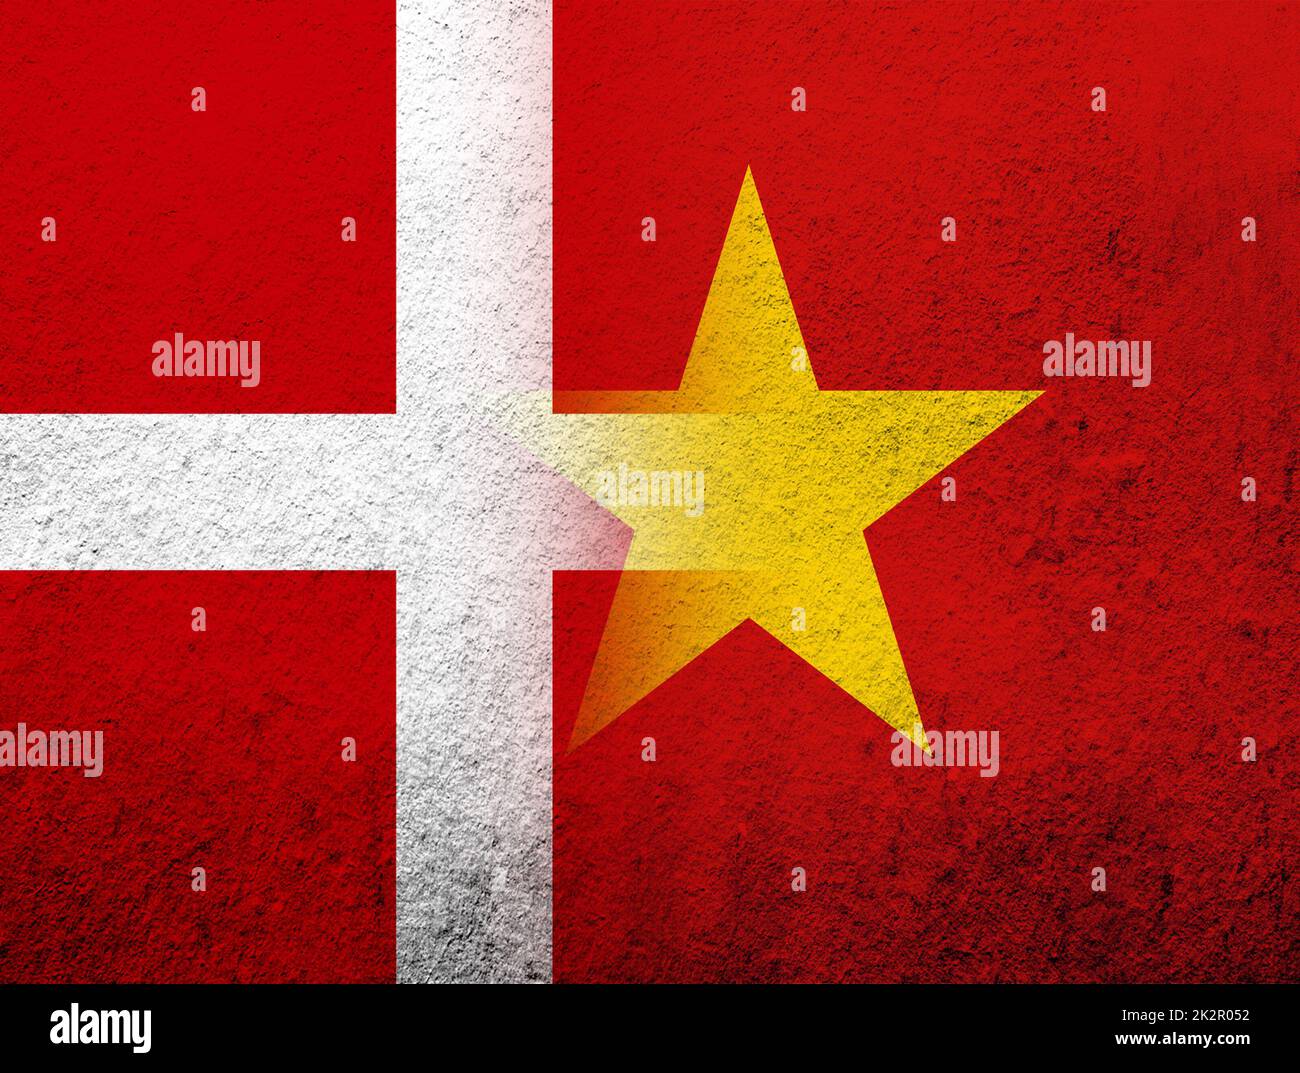 Le Royaume du Danemark drapeau national avec la République socialiste du Vietnam drapeau national. Grunge l'arrière-plan Banque D'Images